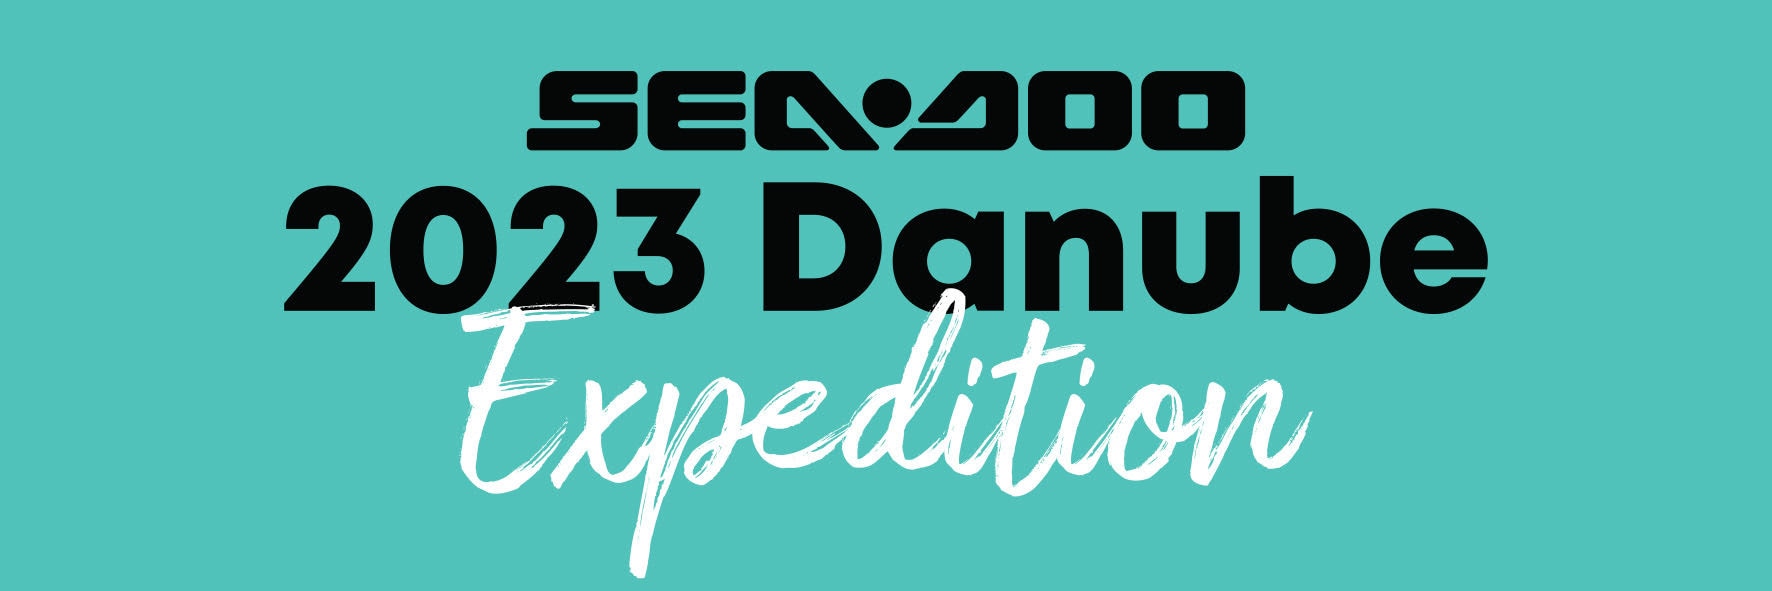 Sea-Doo Danube expedition 2023